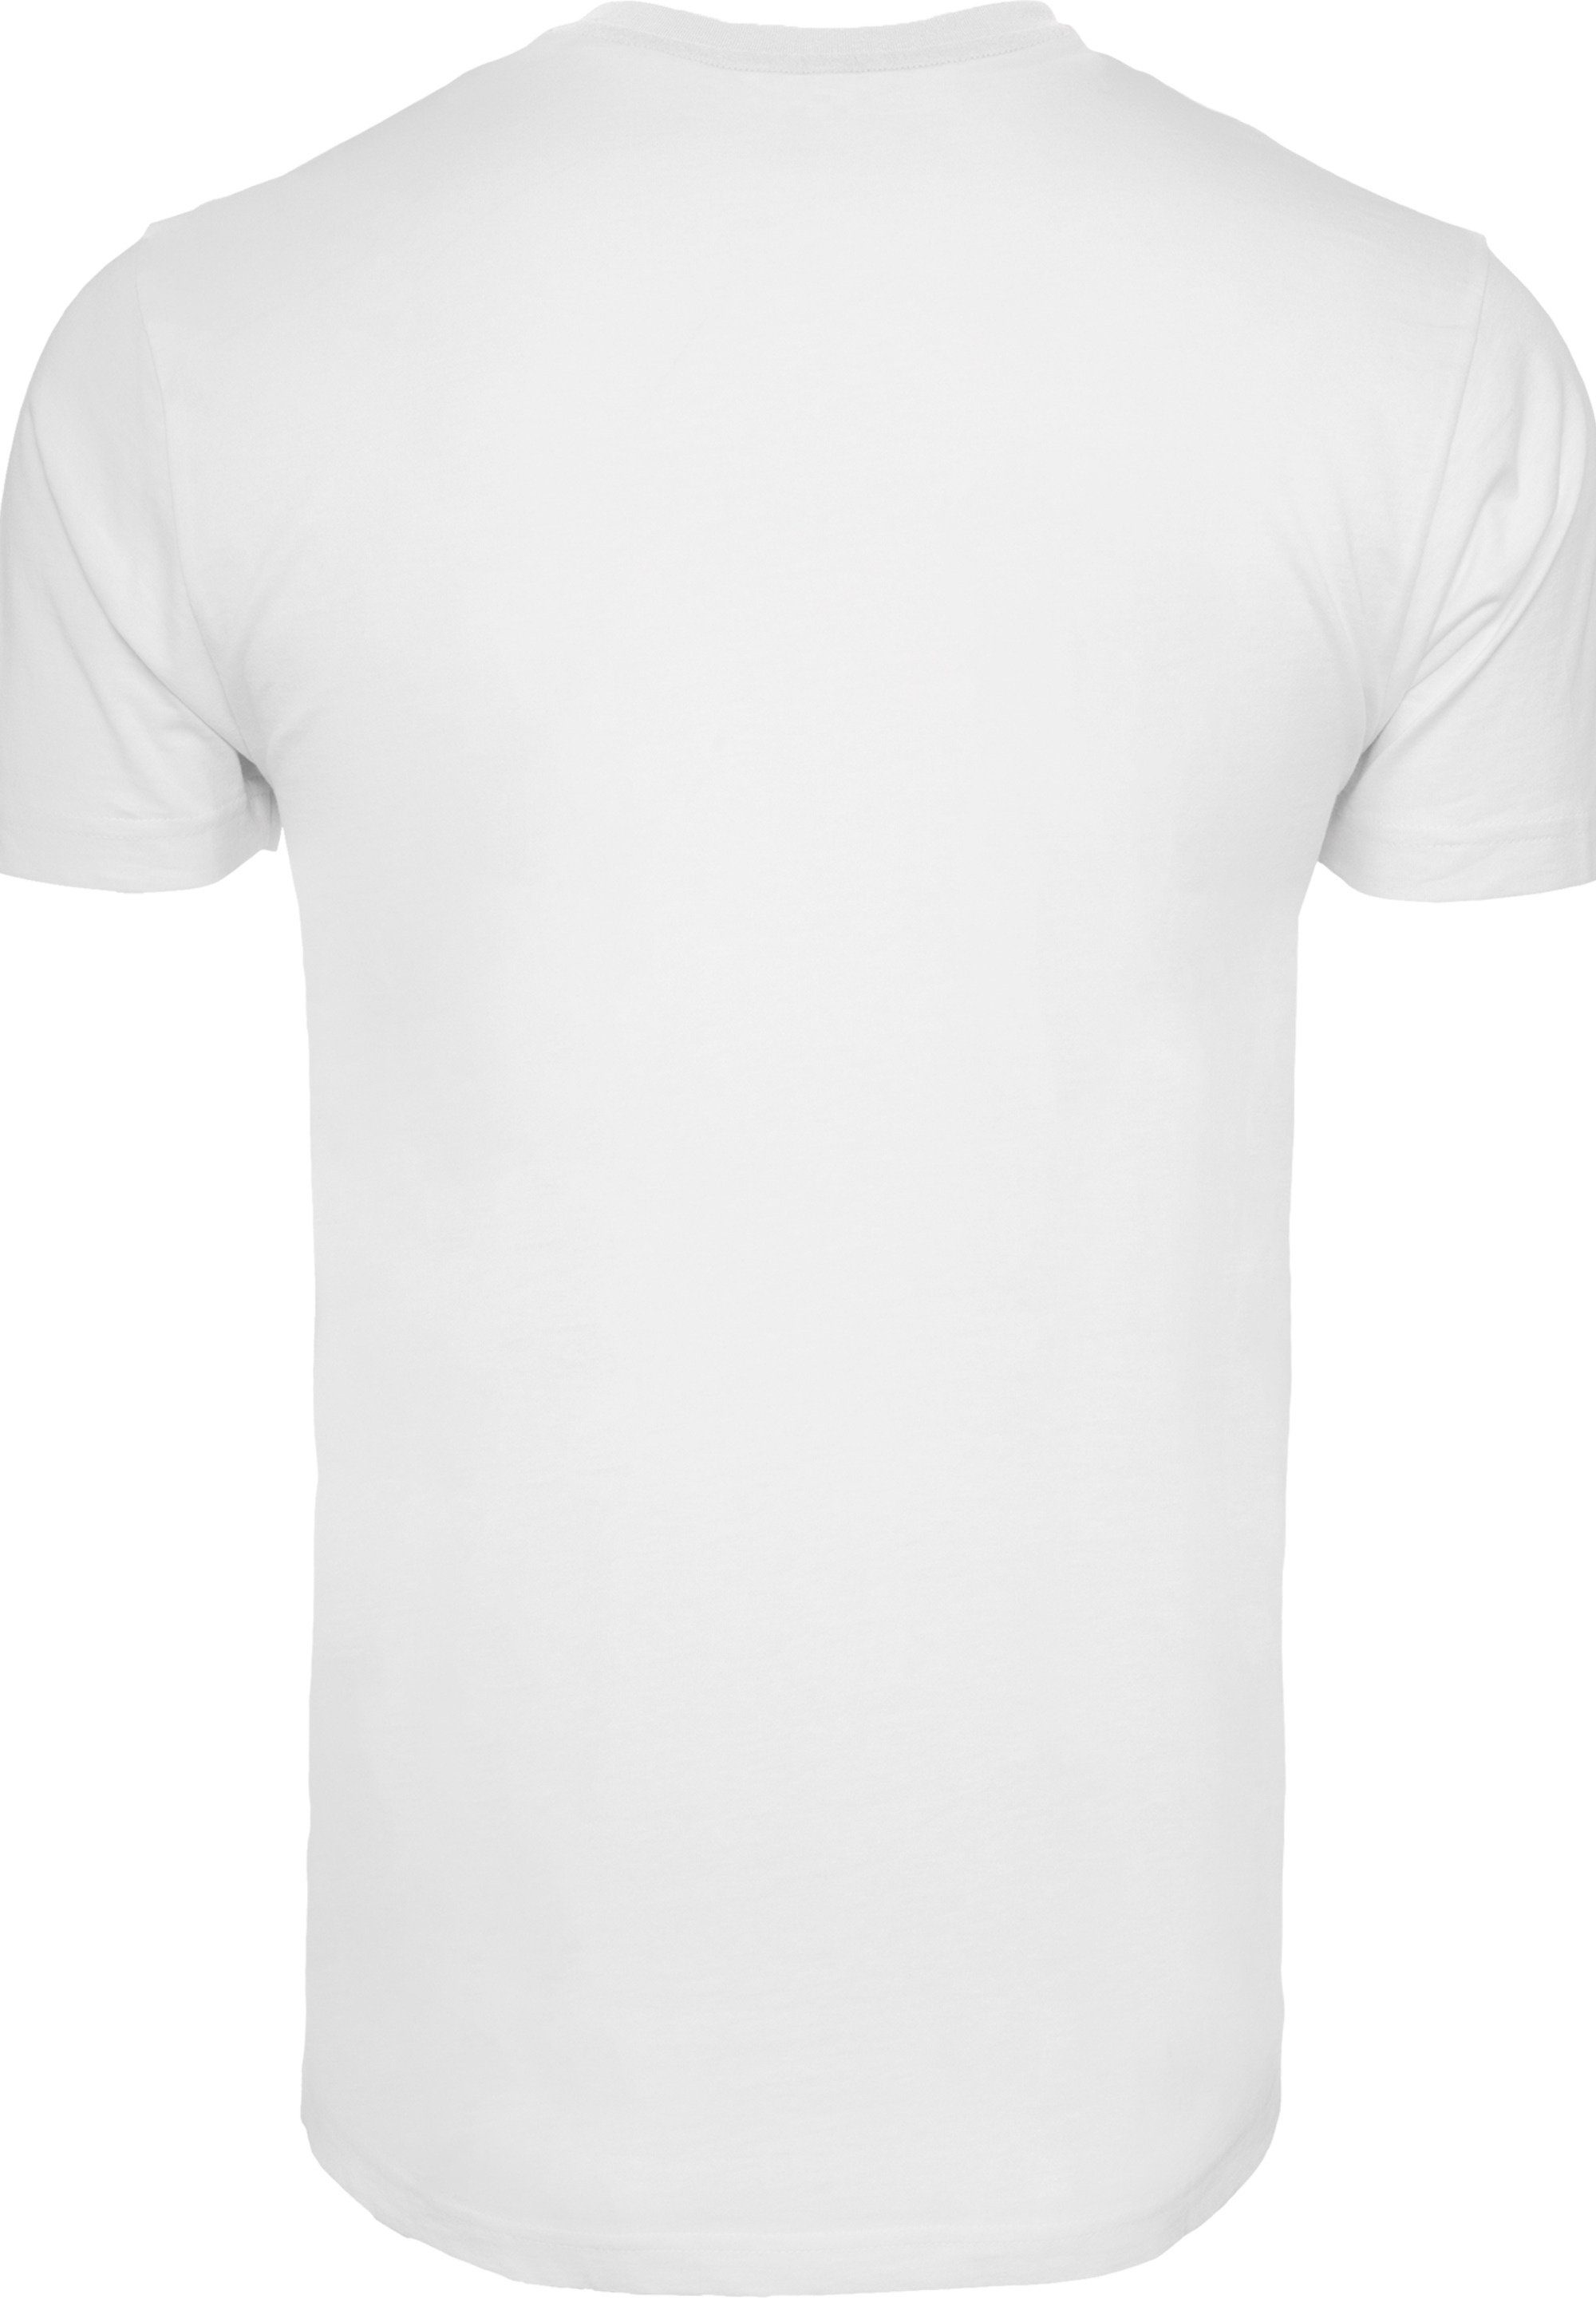 Sketch Puuh Bär Winnie Collage weicher Baumwollstoff F4NT4STIC T-Shirt hohem mit Tragekomfort Print, Sehr Der